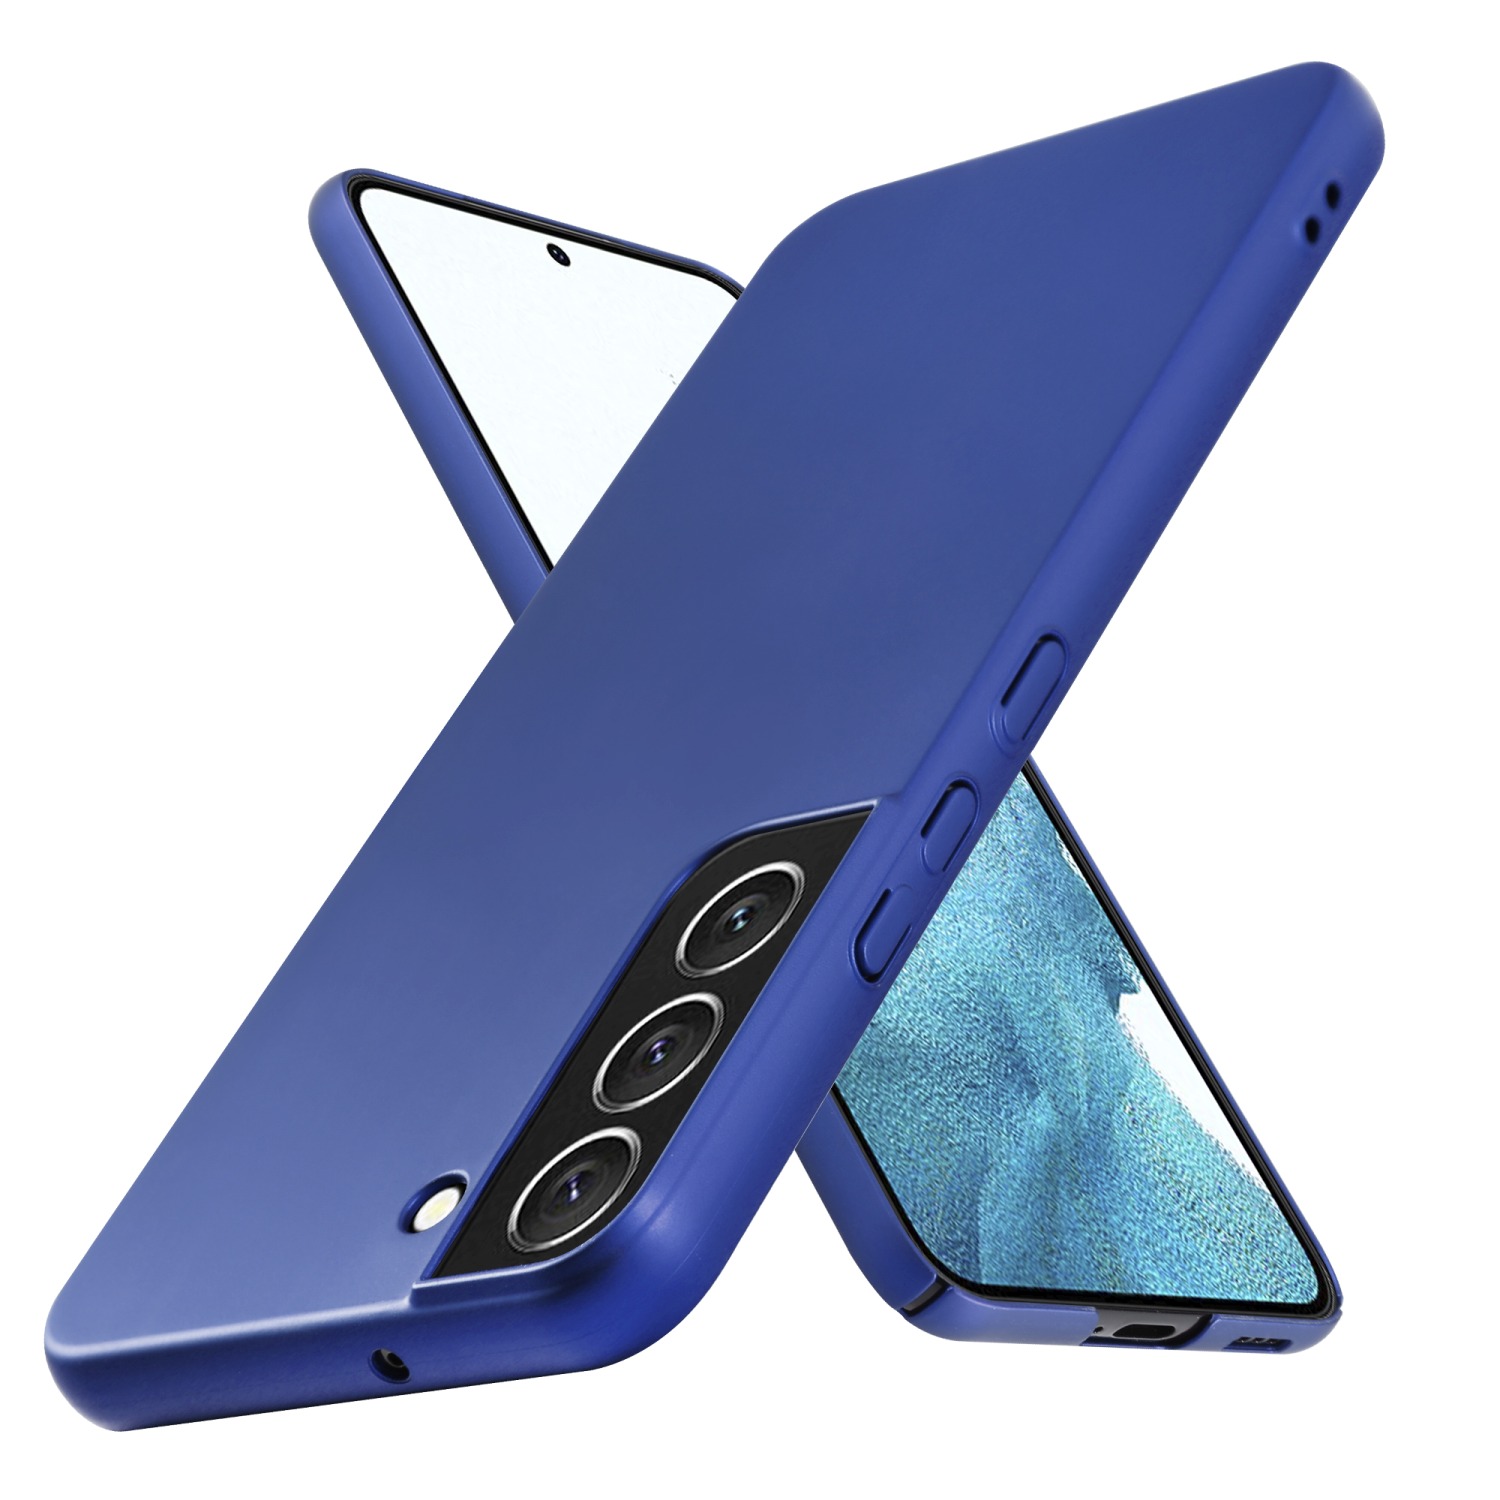 Coque pour Samsung Galaxy S22 en METALLIC BLEU Hard Case Housse de protection Étui d'aspect métallique contre les rayures et les chocs